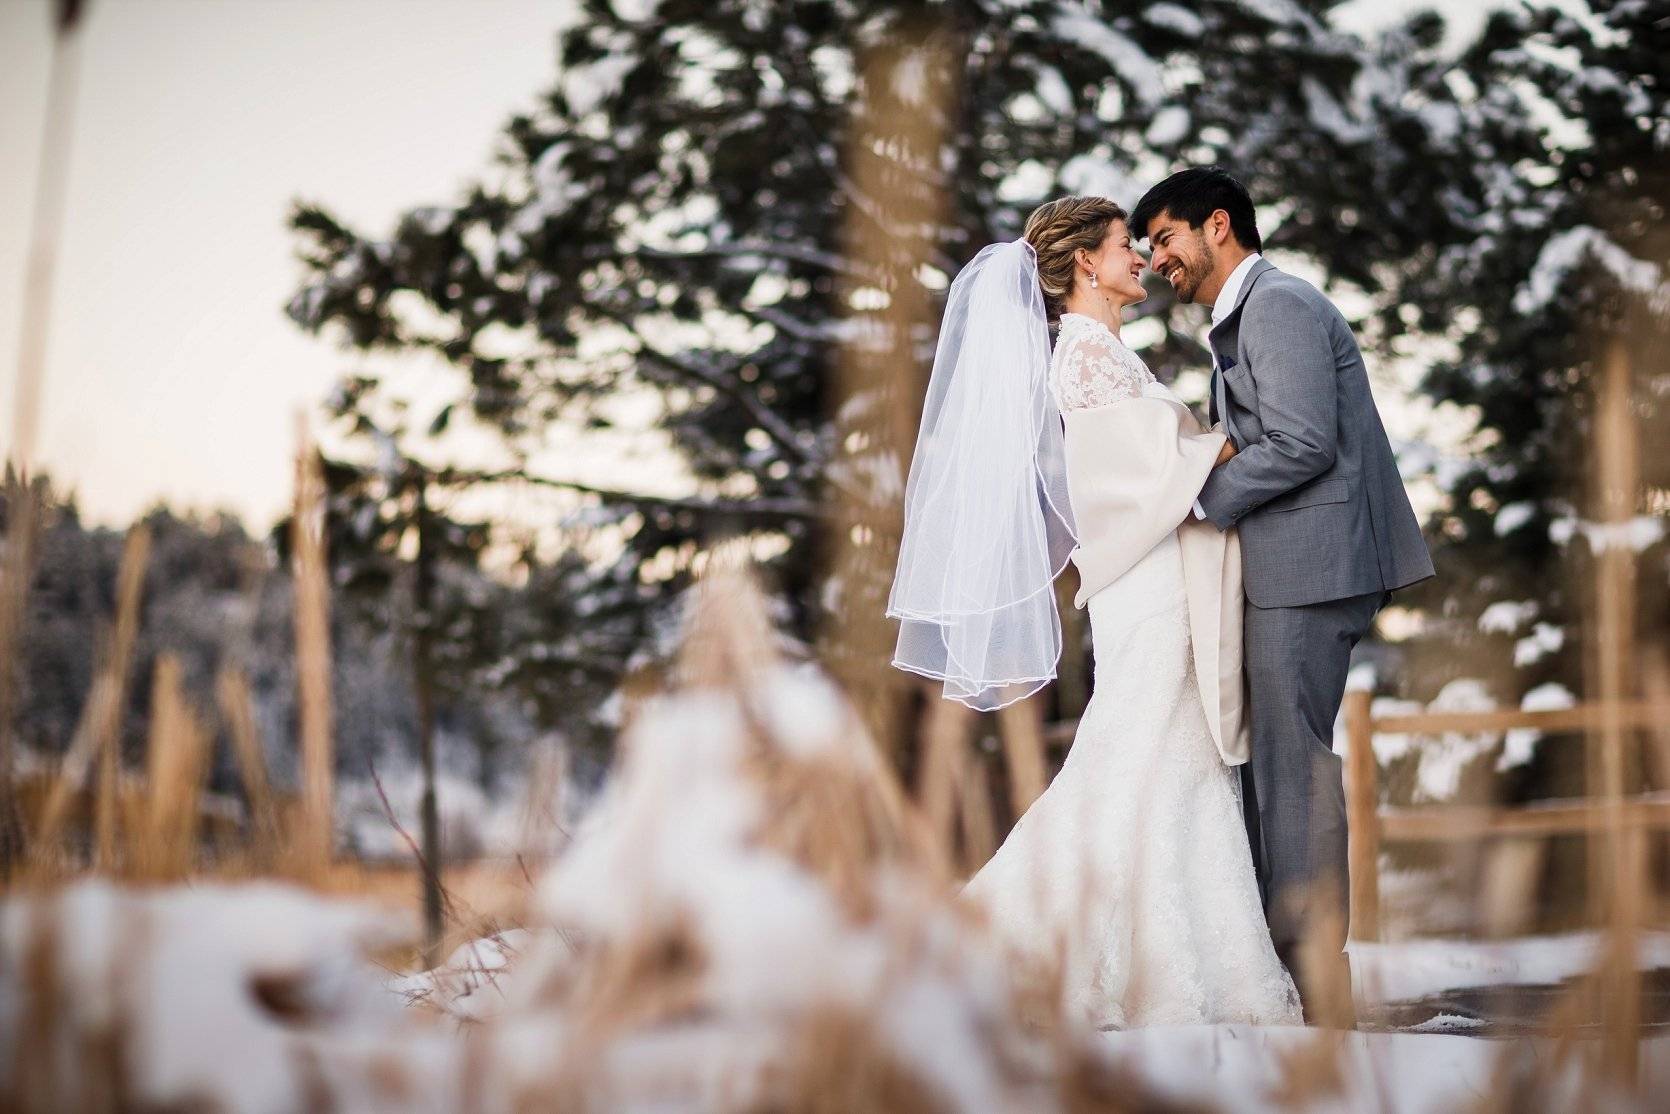 Свадьба зимой 2022: где провести и идеи оформления с фото, плюсы-минусы и приметы